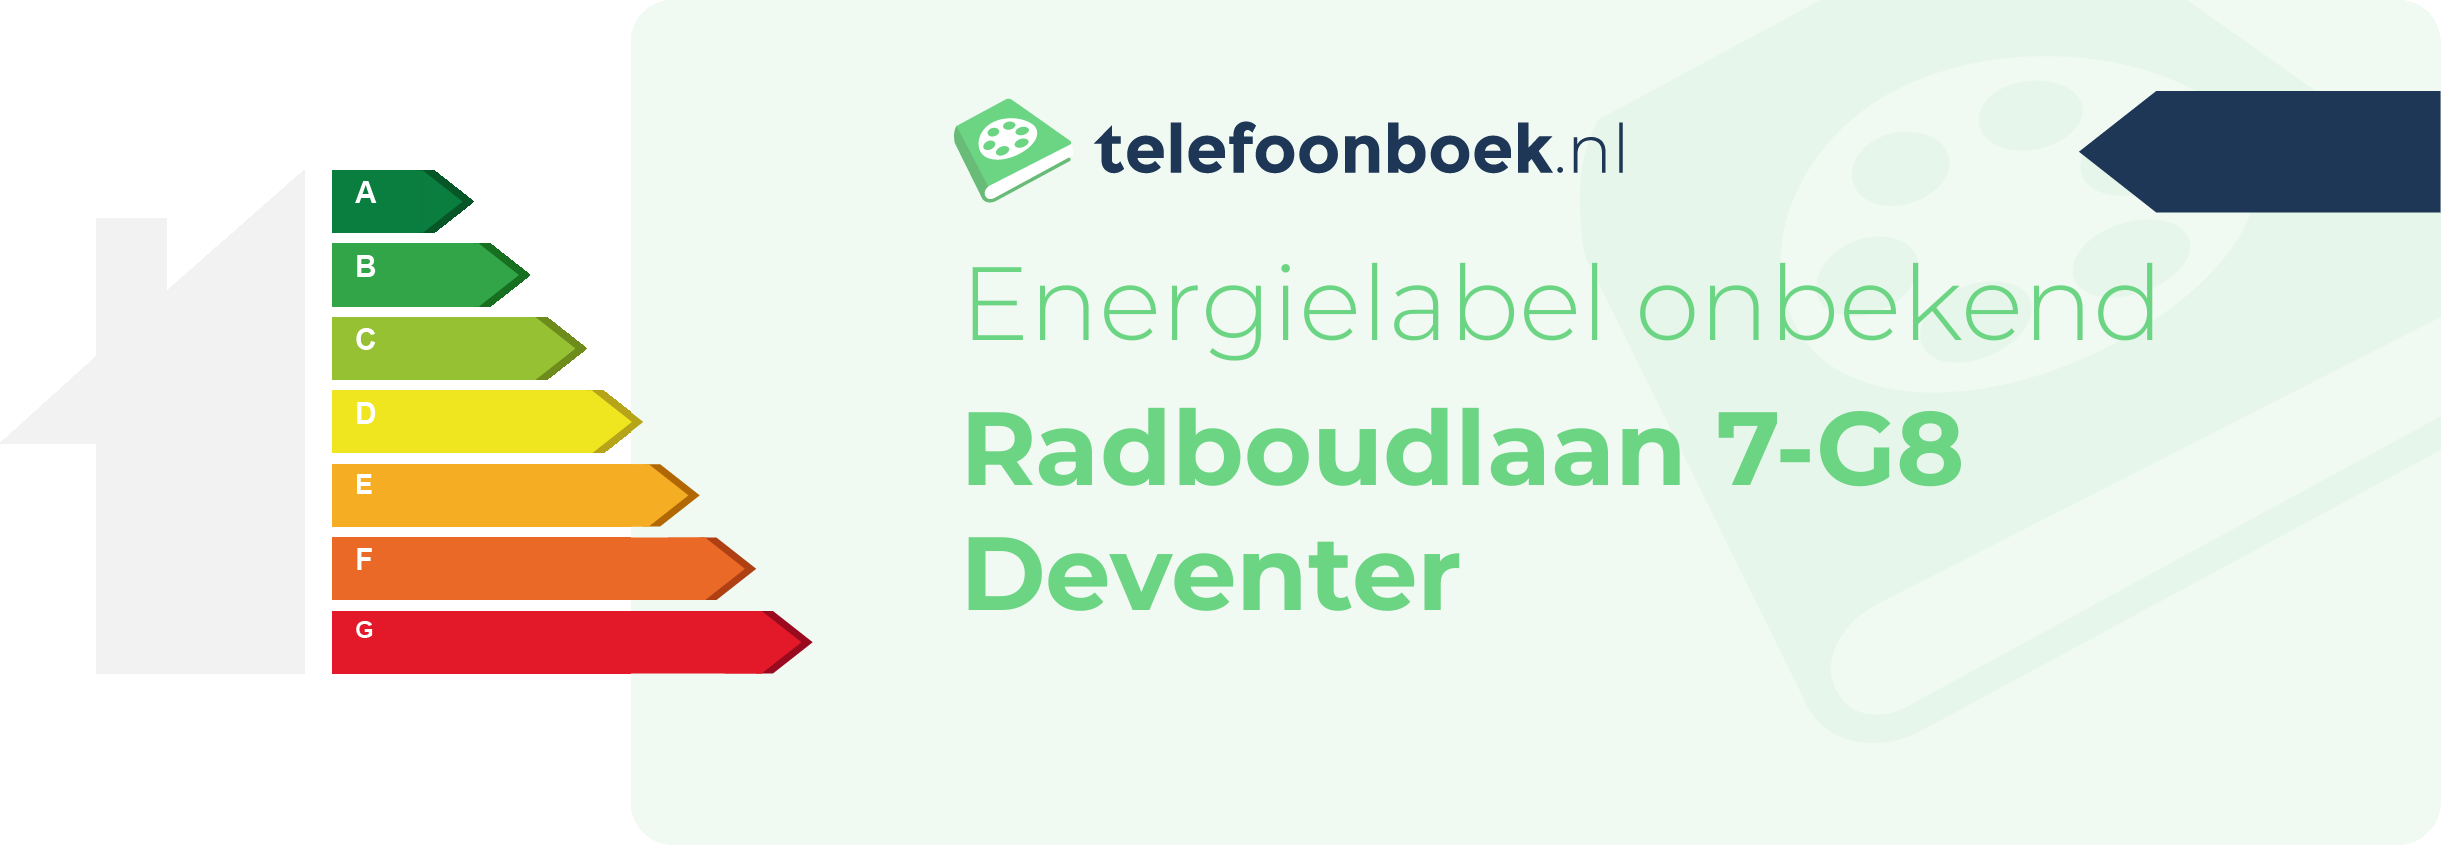 Energielabel Radboudlaan 7-G8 Deventer